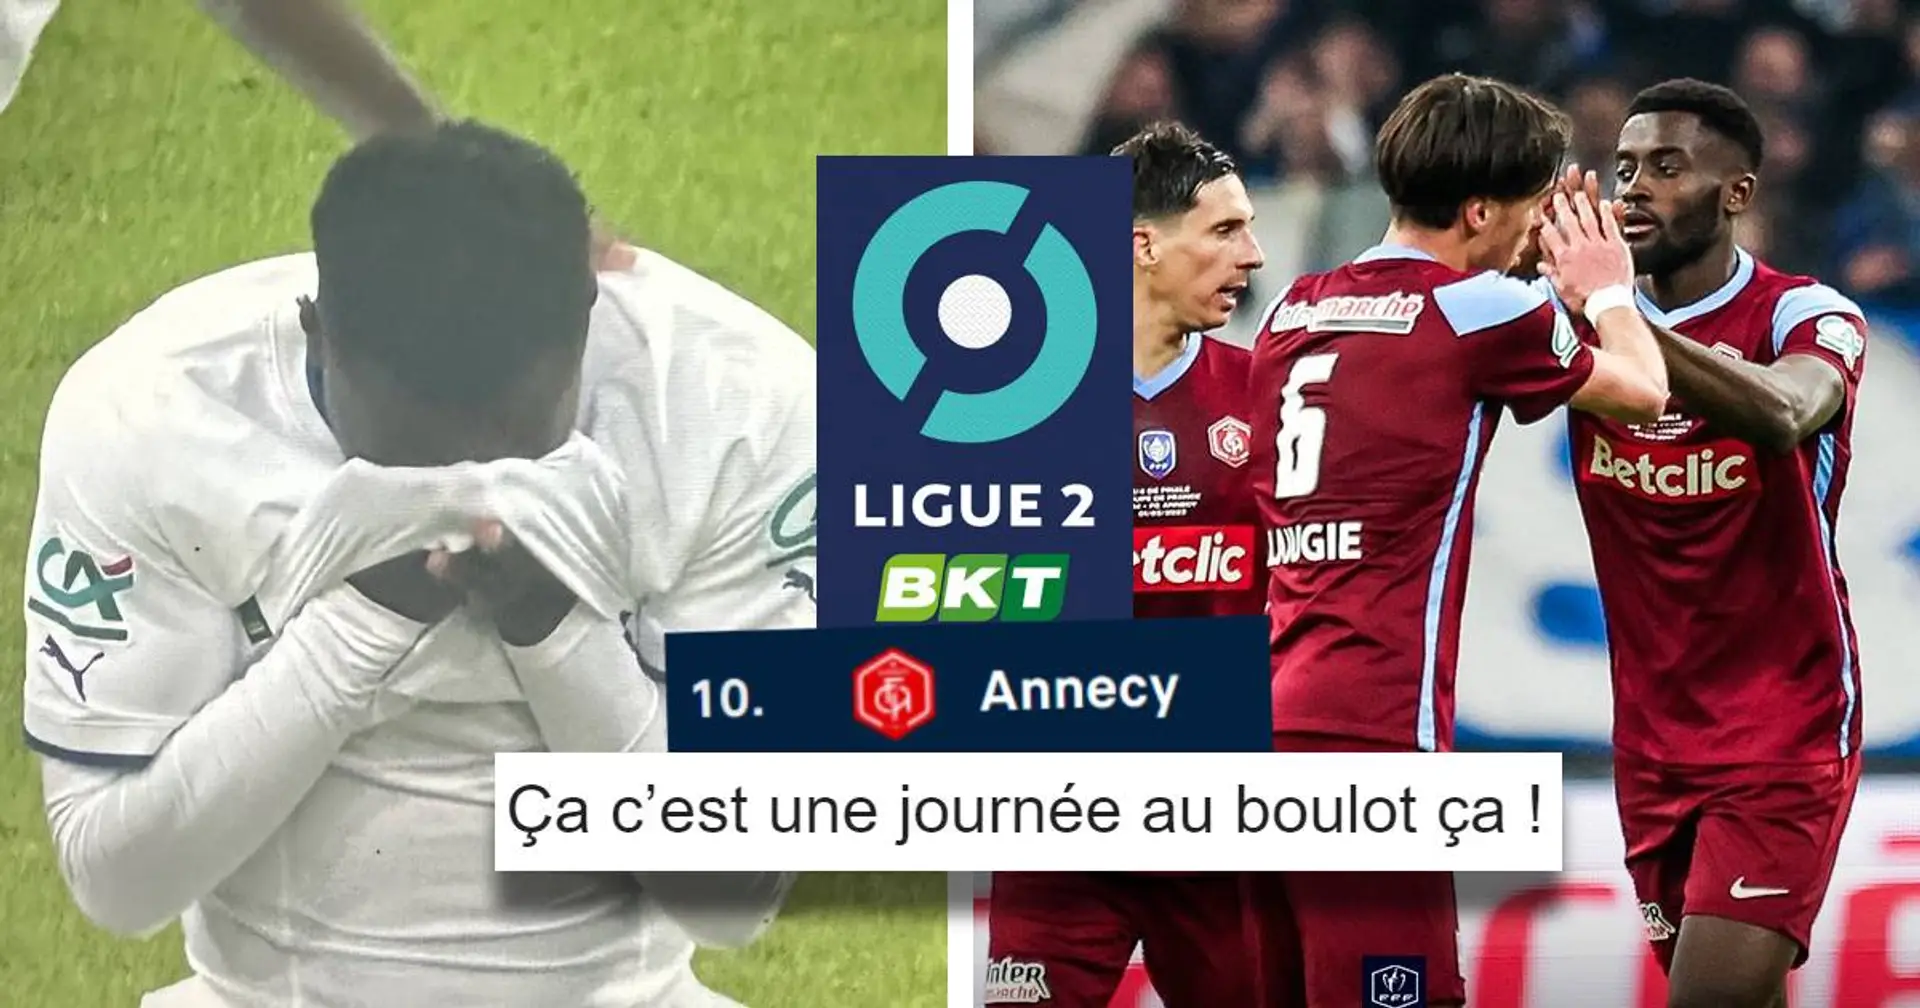 Annecy, 10e de Ligue 2, élimine l'OM de la Coupe de France au Vélodrome